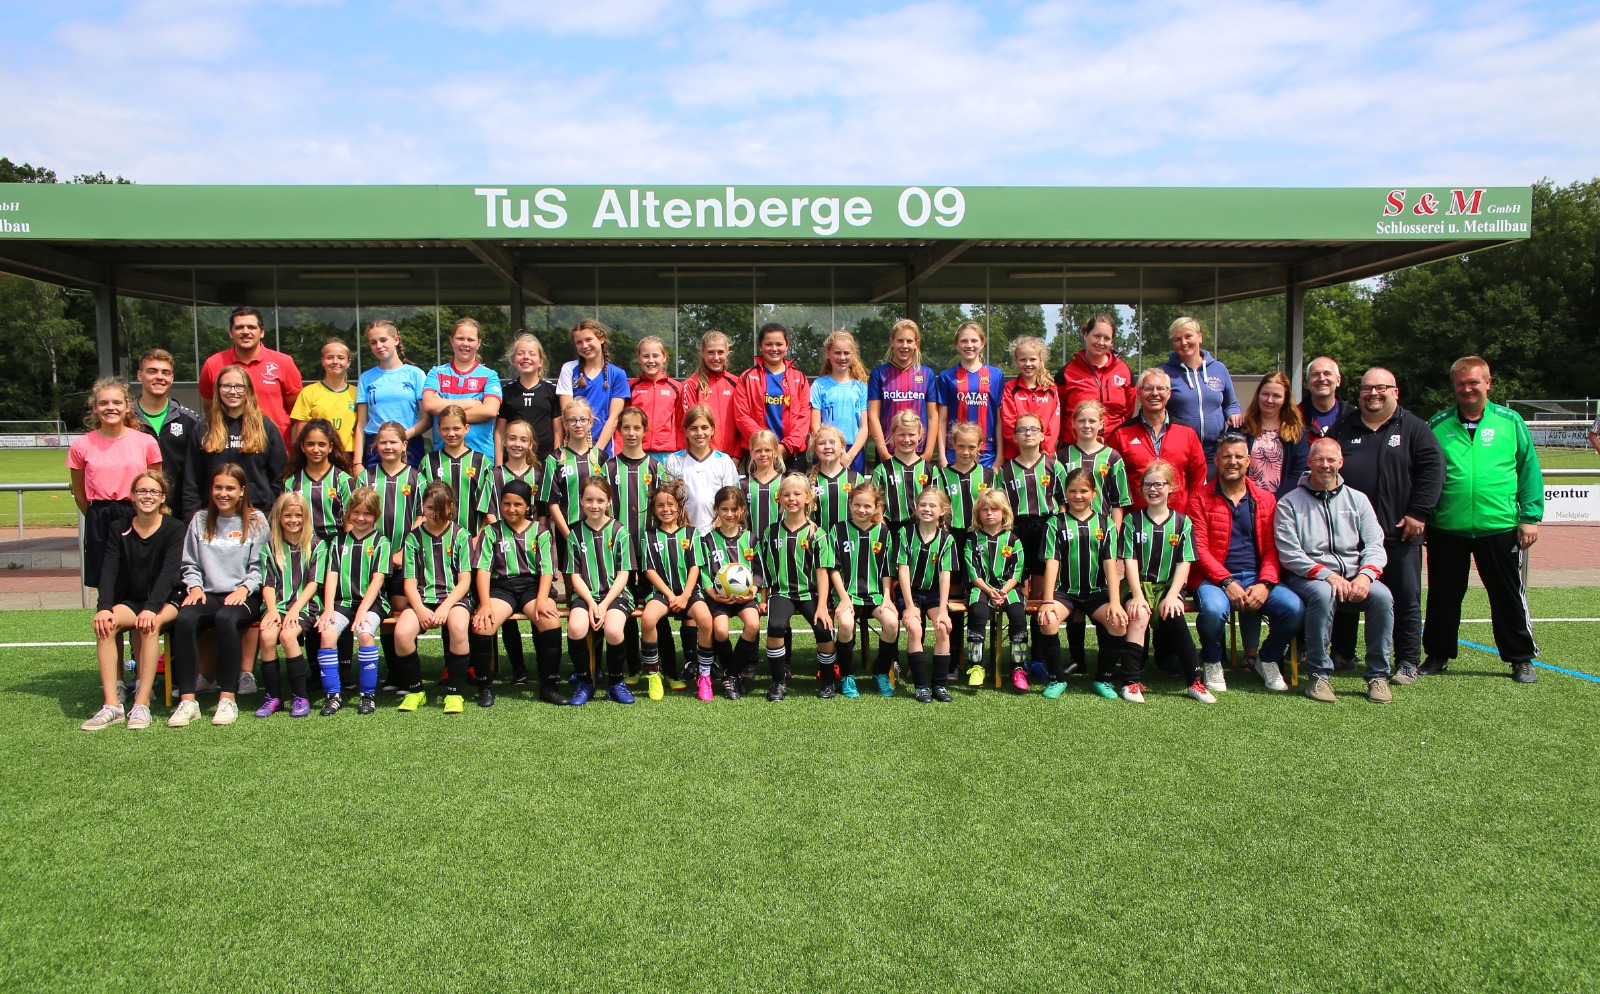 Meidenvoetbal, de grens over! Internationaler Vereinstag für Mädchenfußball beim TuS.